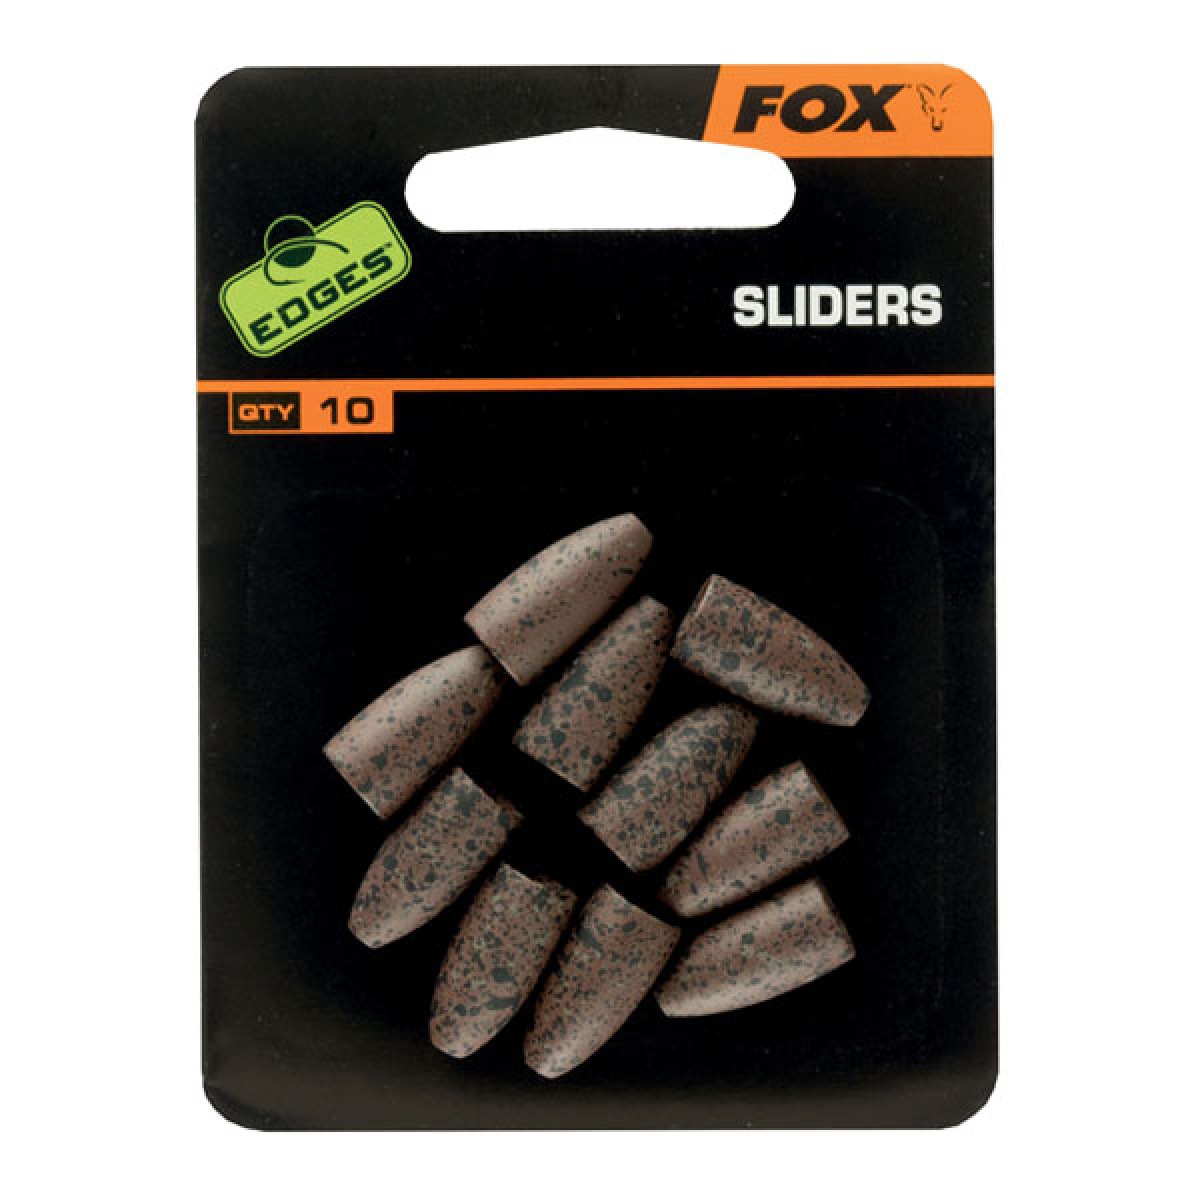 FOX EDGES SLIDERS